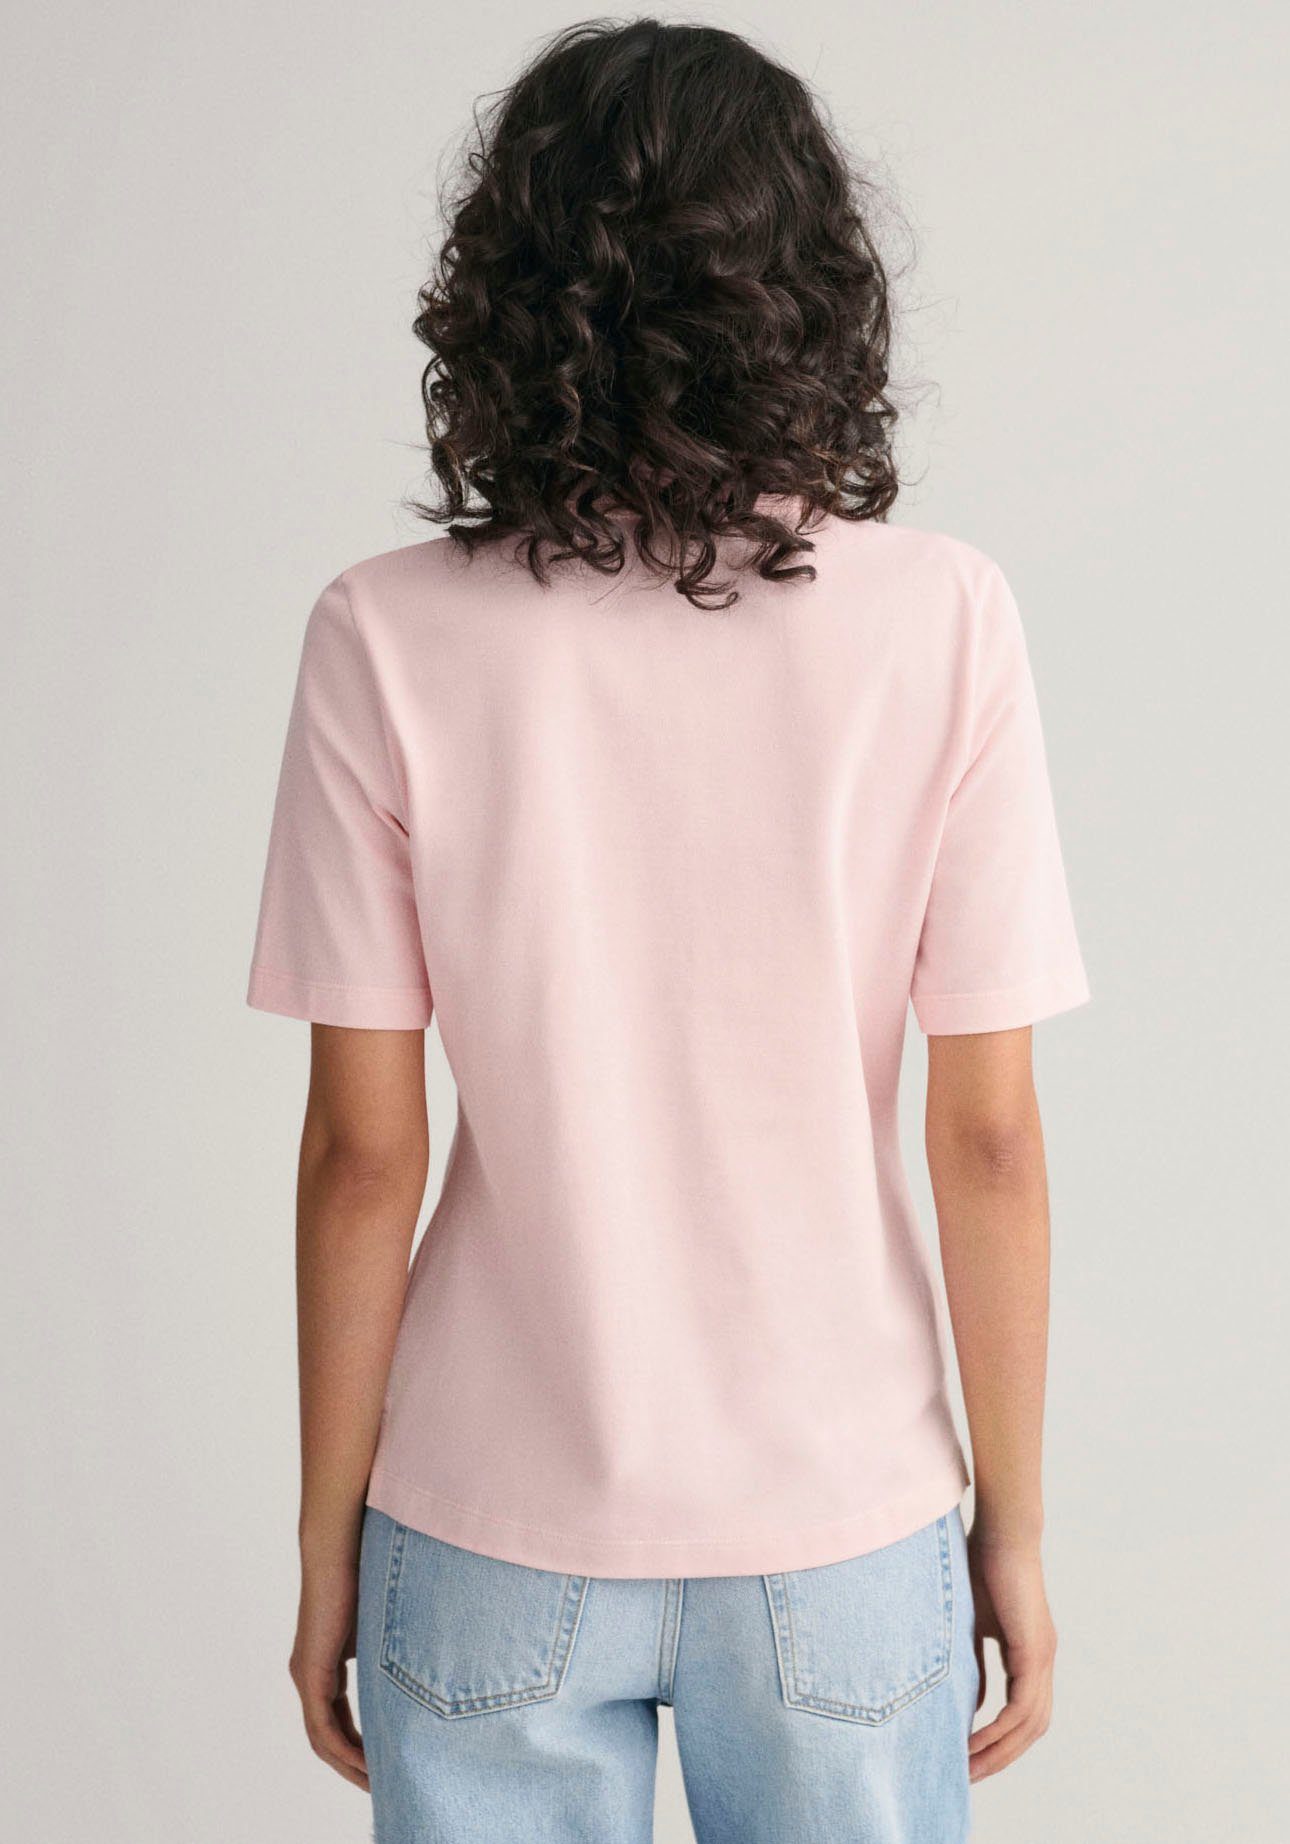 mit auf faded grafischer KA der Brust Logostickerei pink Poloshirt PIQUE POLO SHIELD Gant SLIM